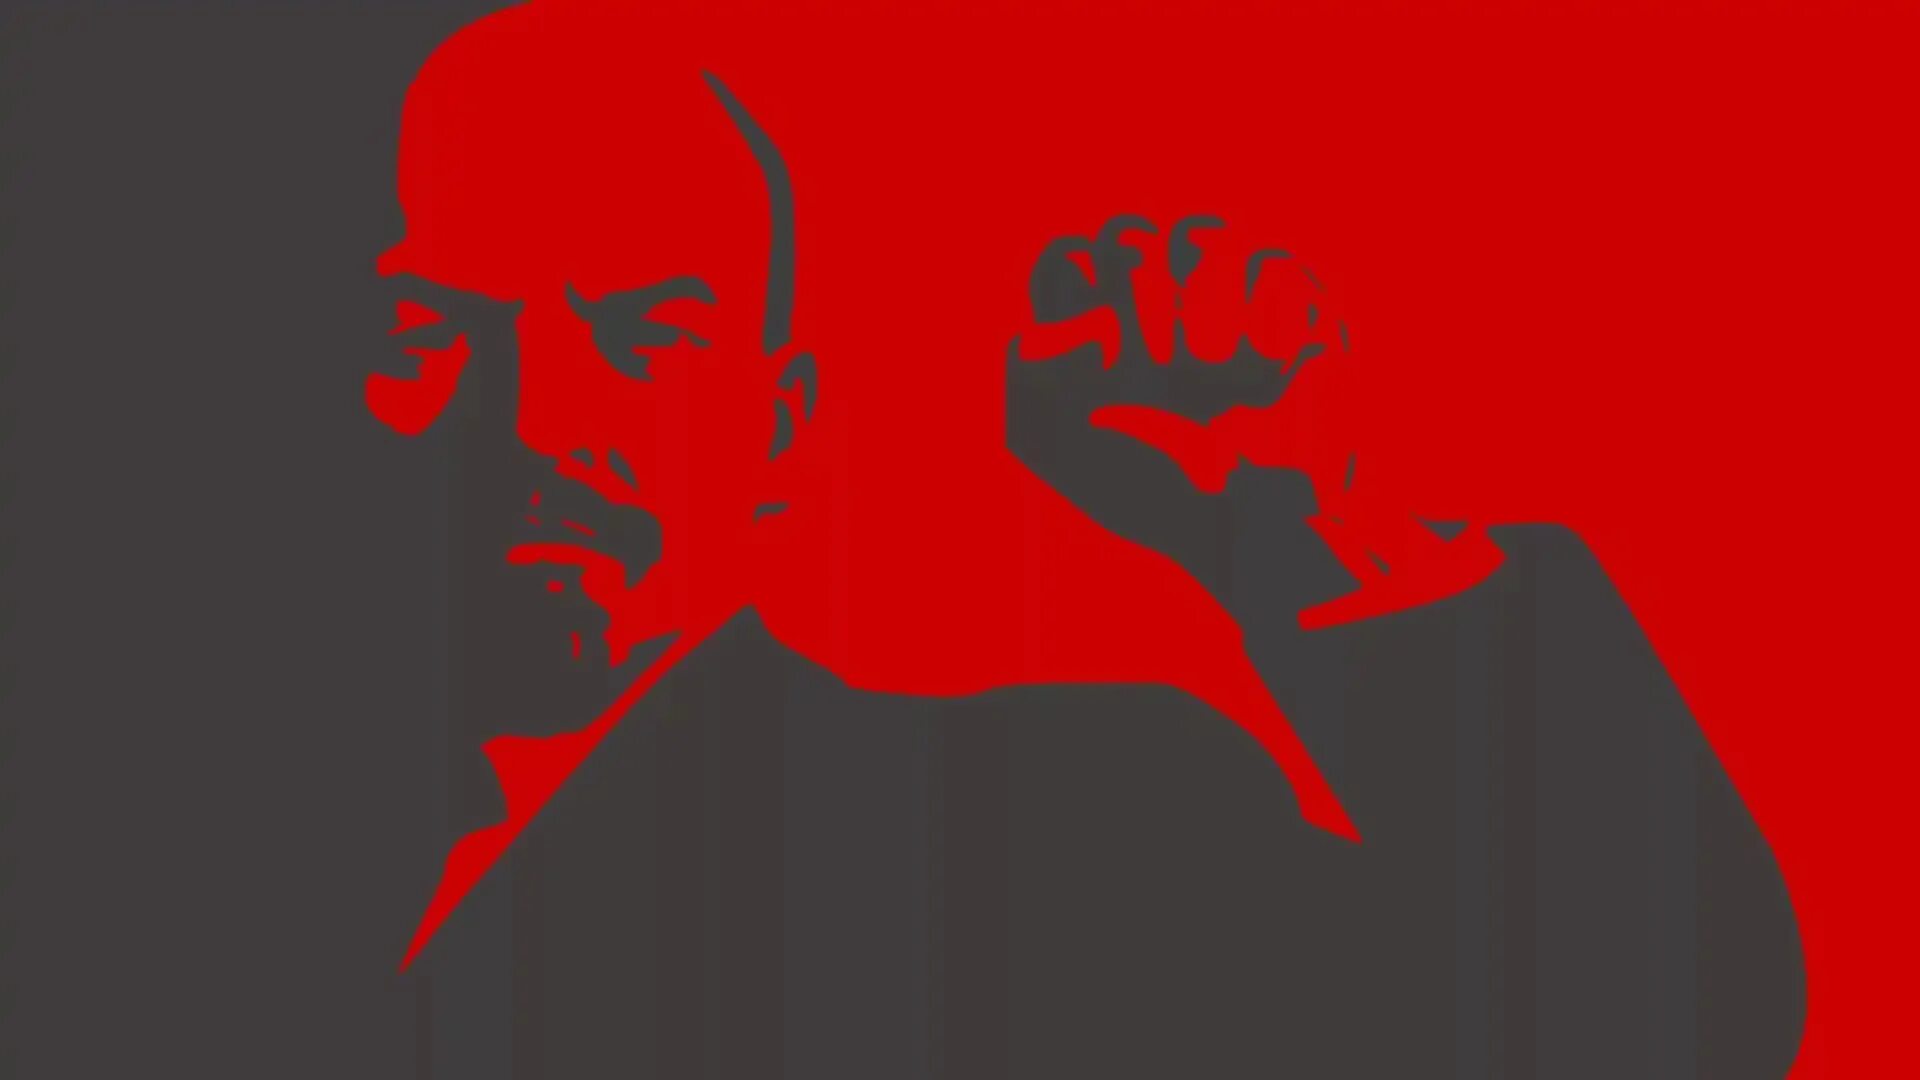 Маркс Энгельс Ленин Сталин арт. СССР красный флаг Ленин коммунизм. Сталин в октябрьской революции